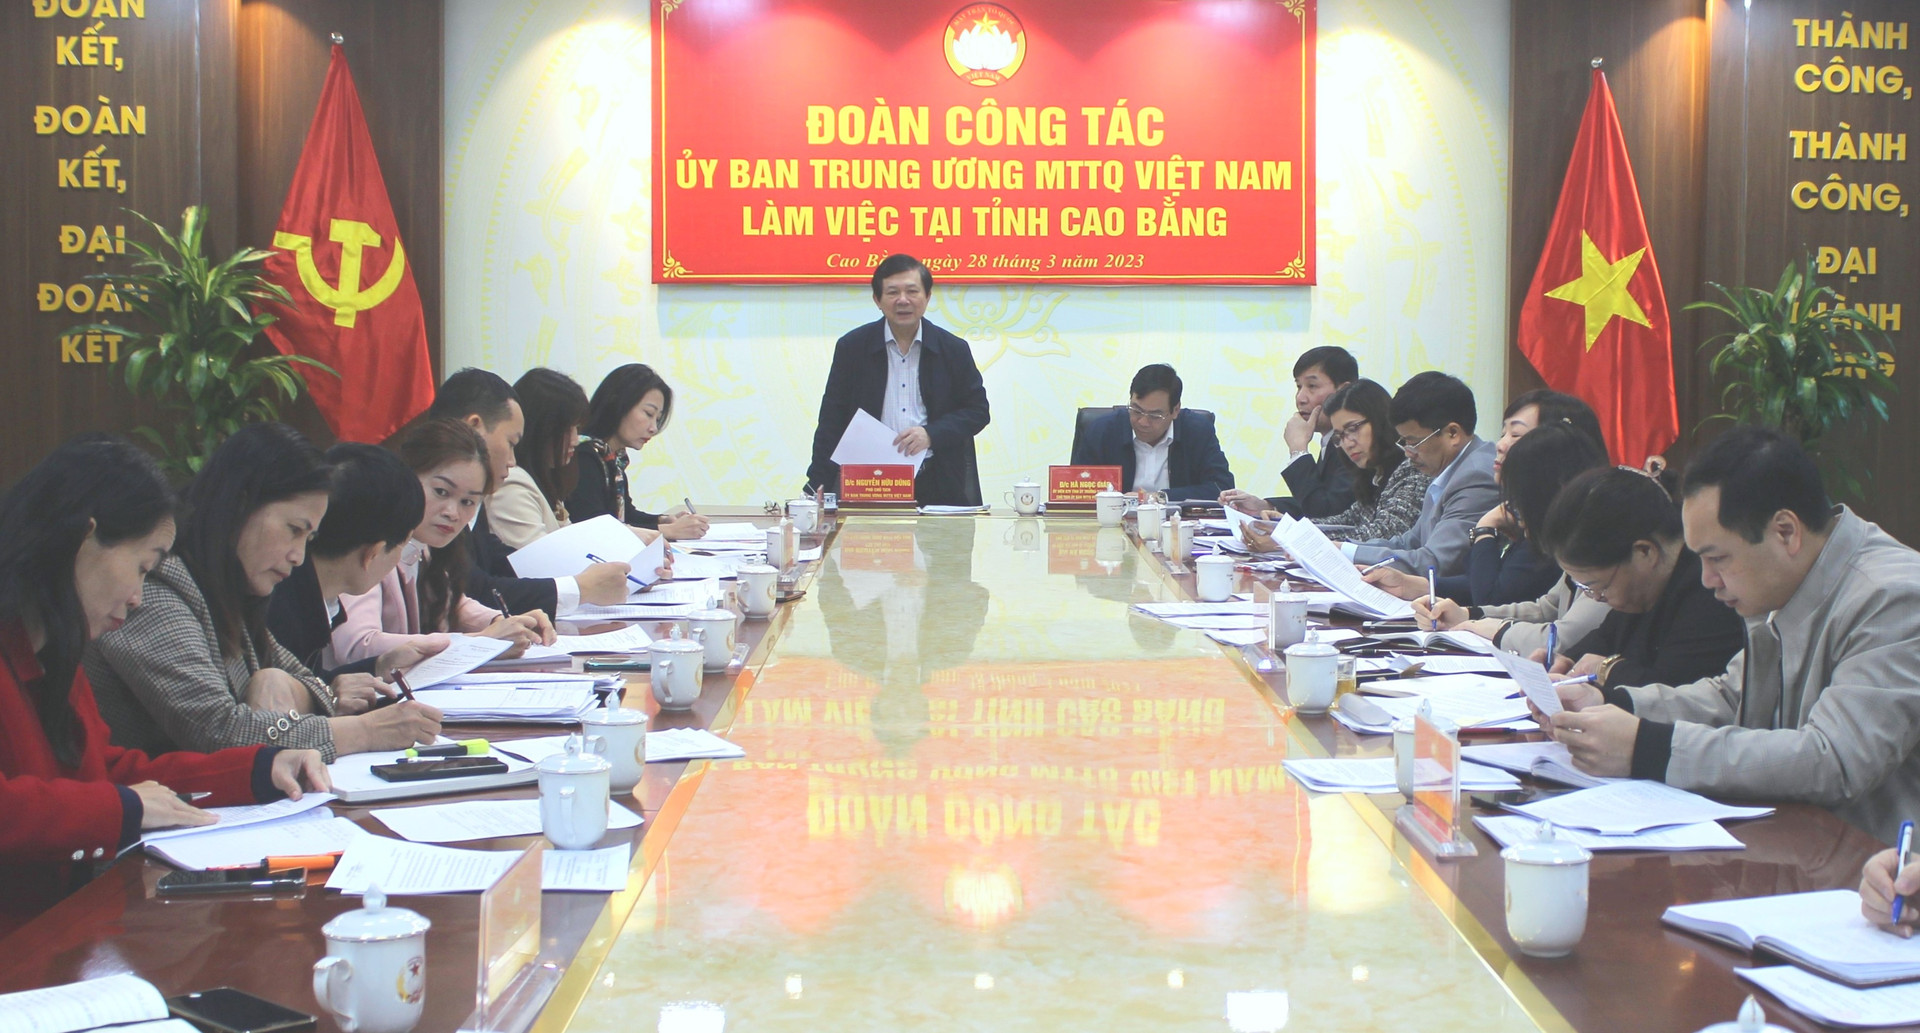 Phó Chủ tịch Ủy ban Trung ương MTTQ Việt Nam Nguyễn Hữu Dũng phát biểu kết luận buổi kiểm tra.